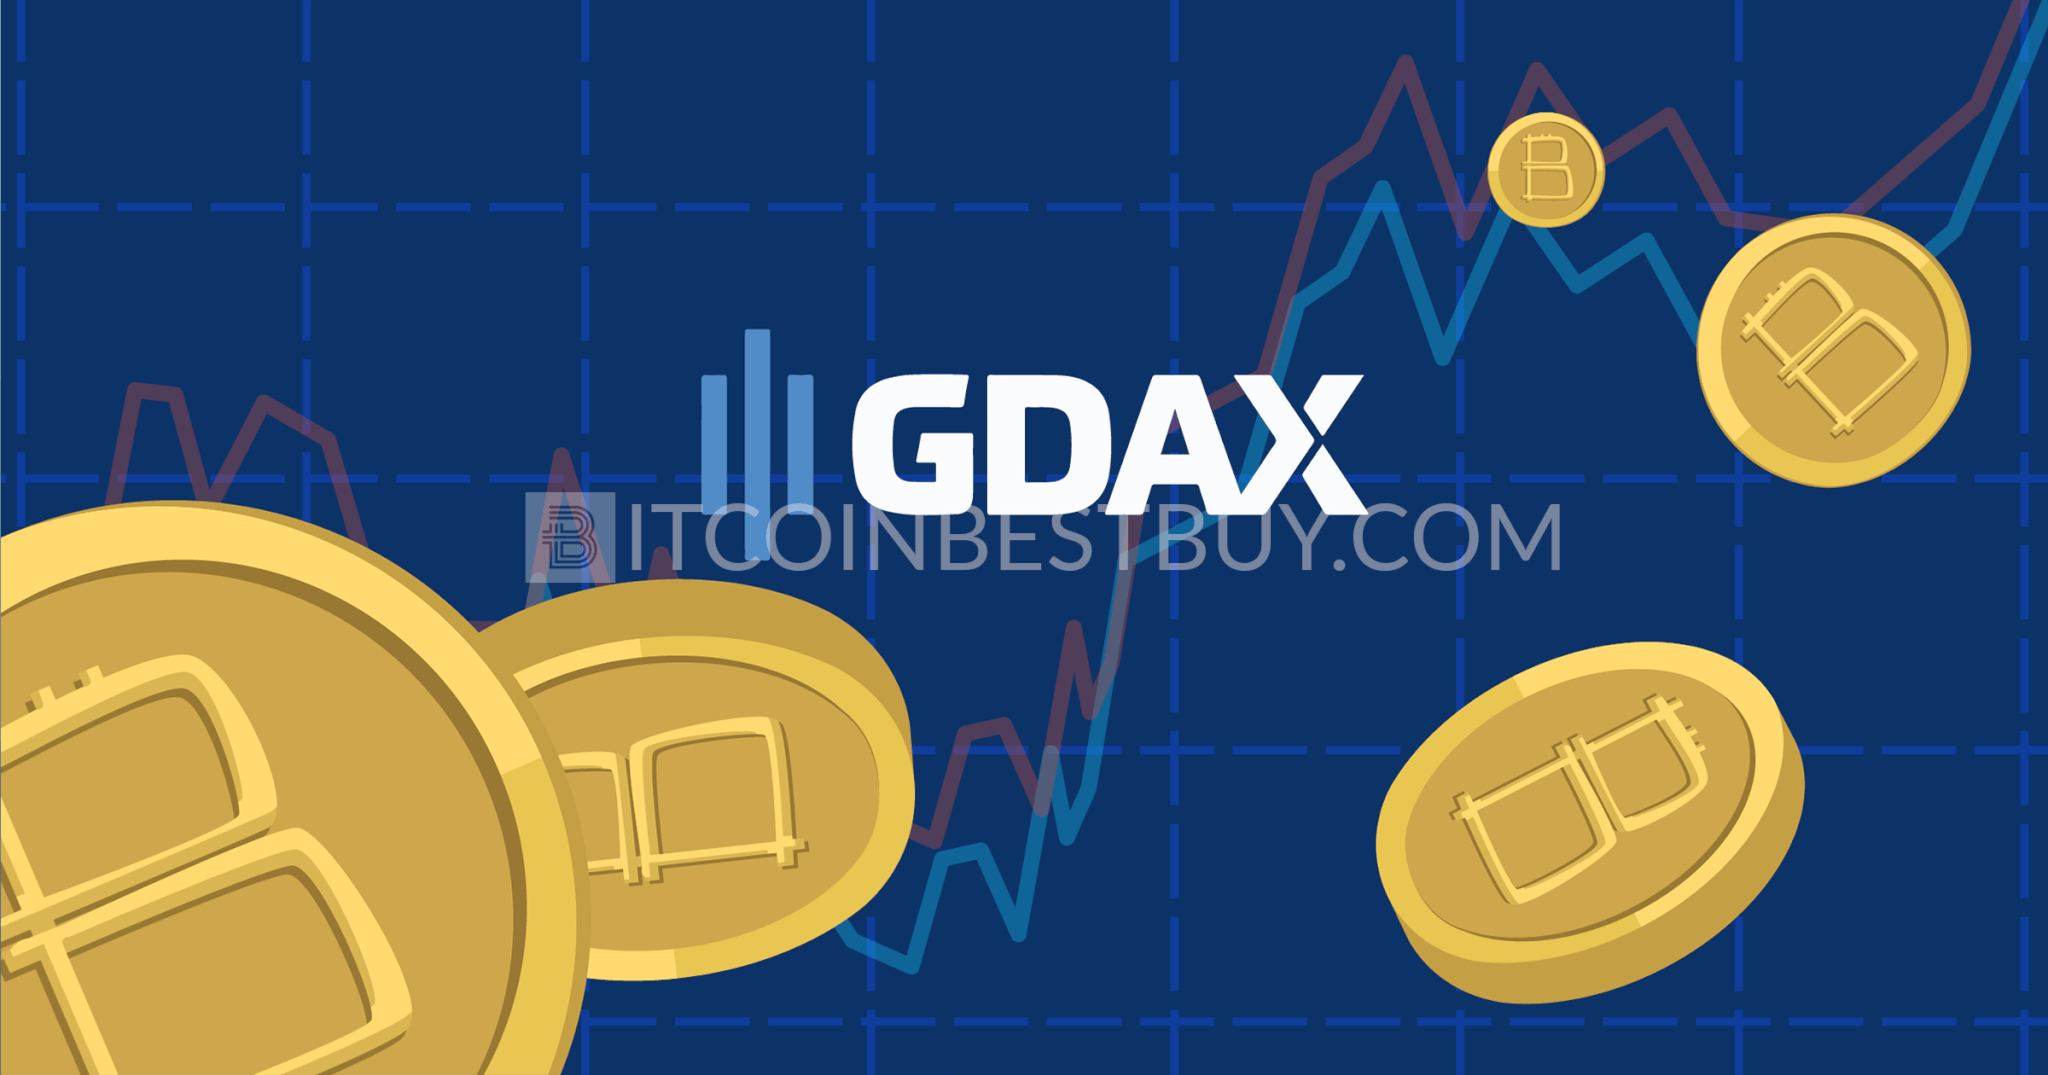 Beoordeel GDAX bitcoin-uitwisseling